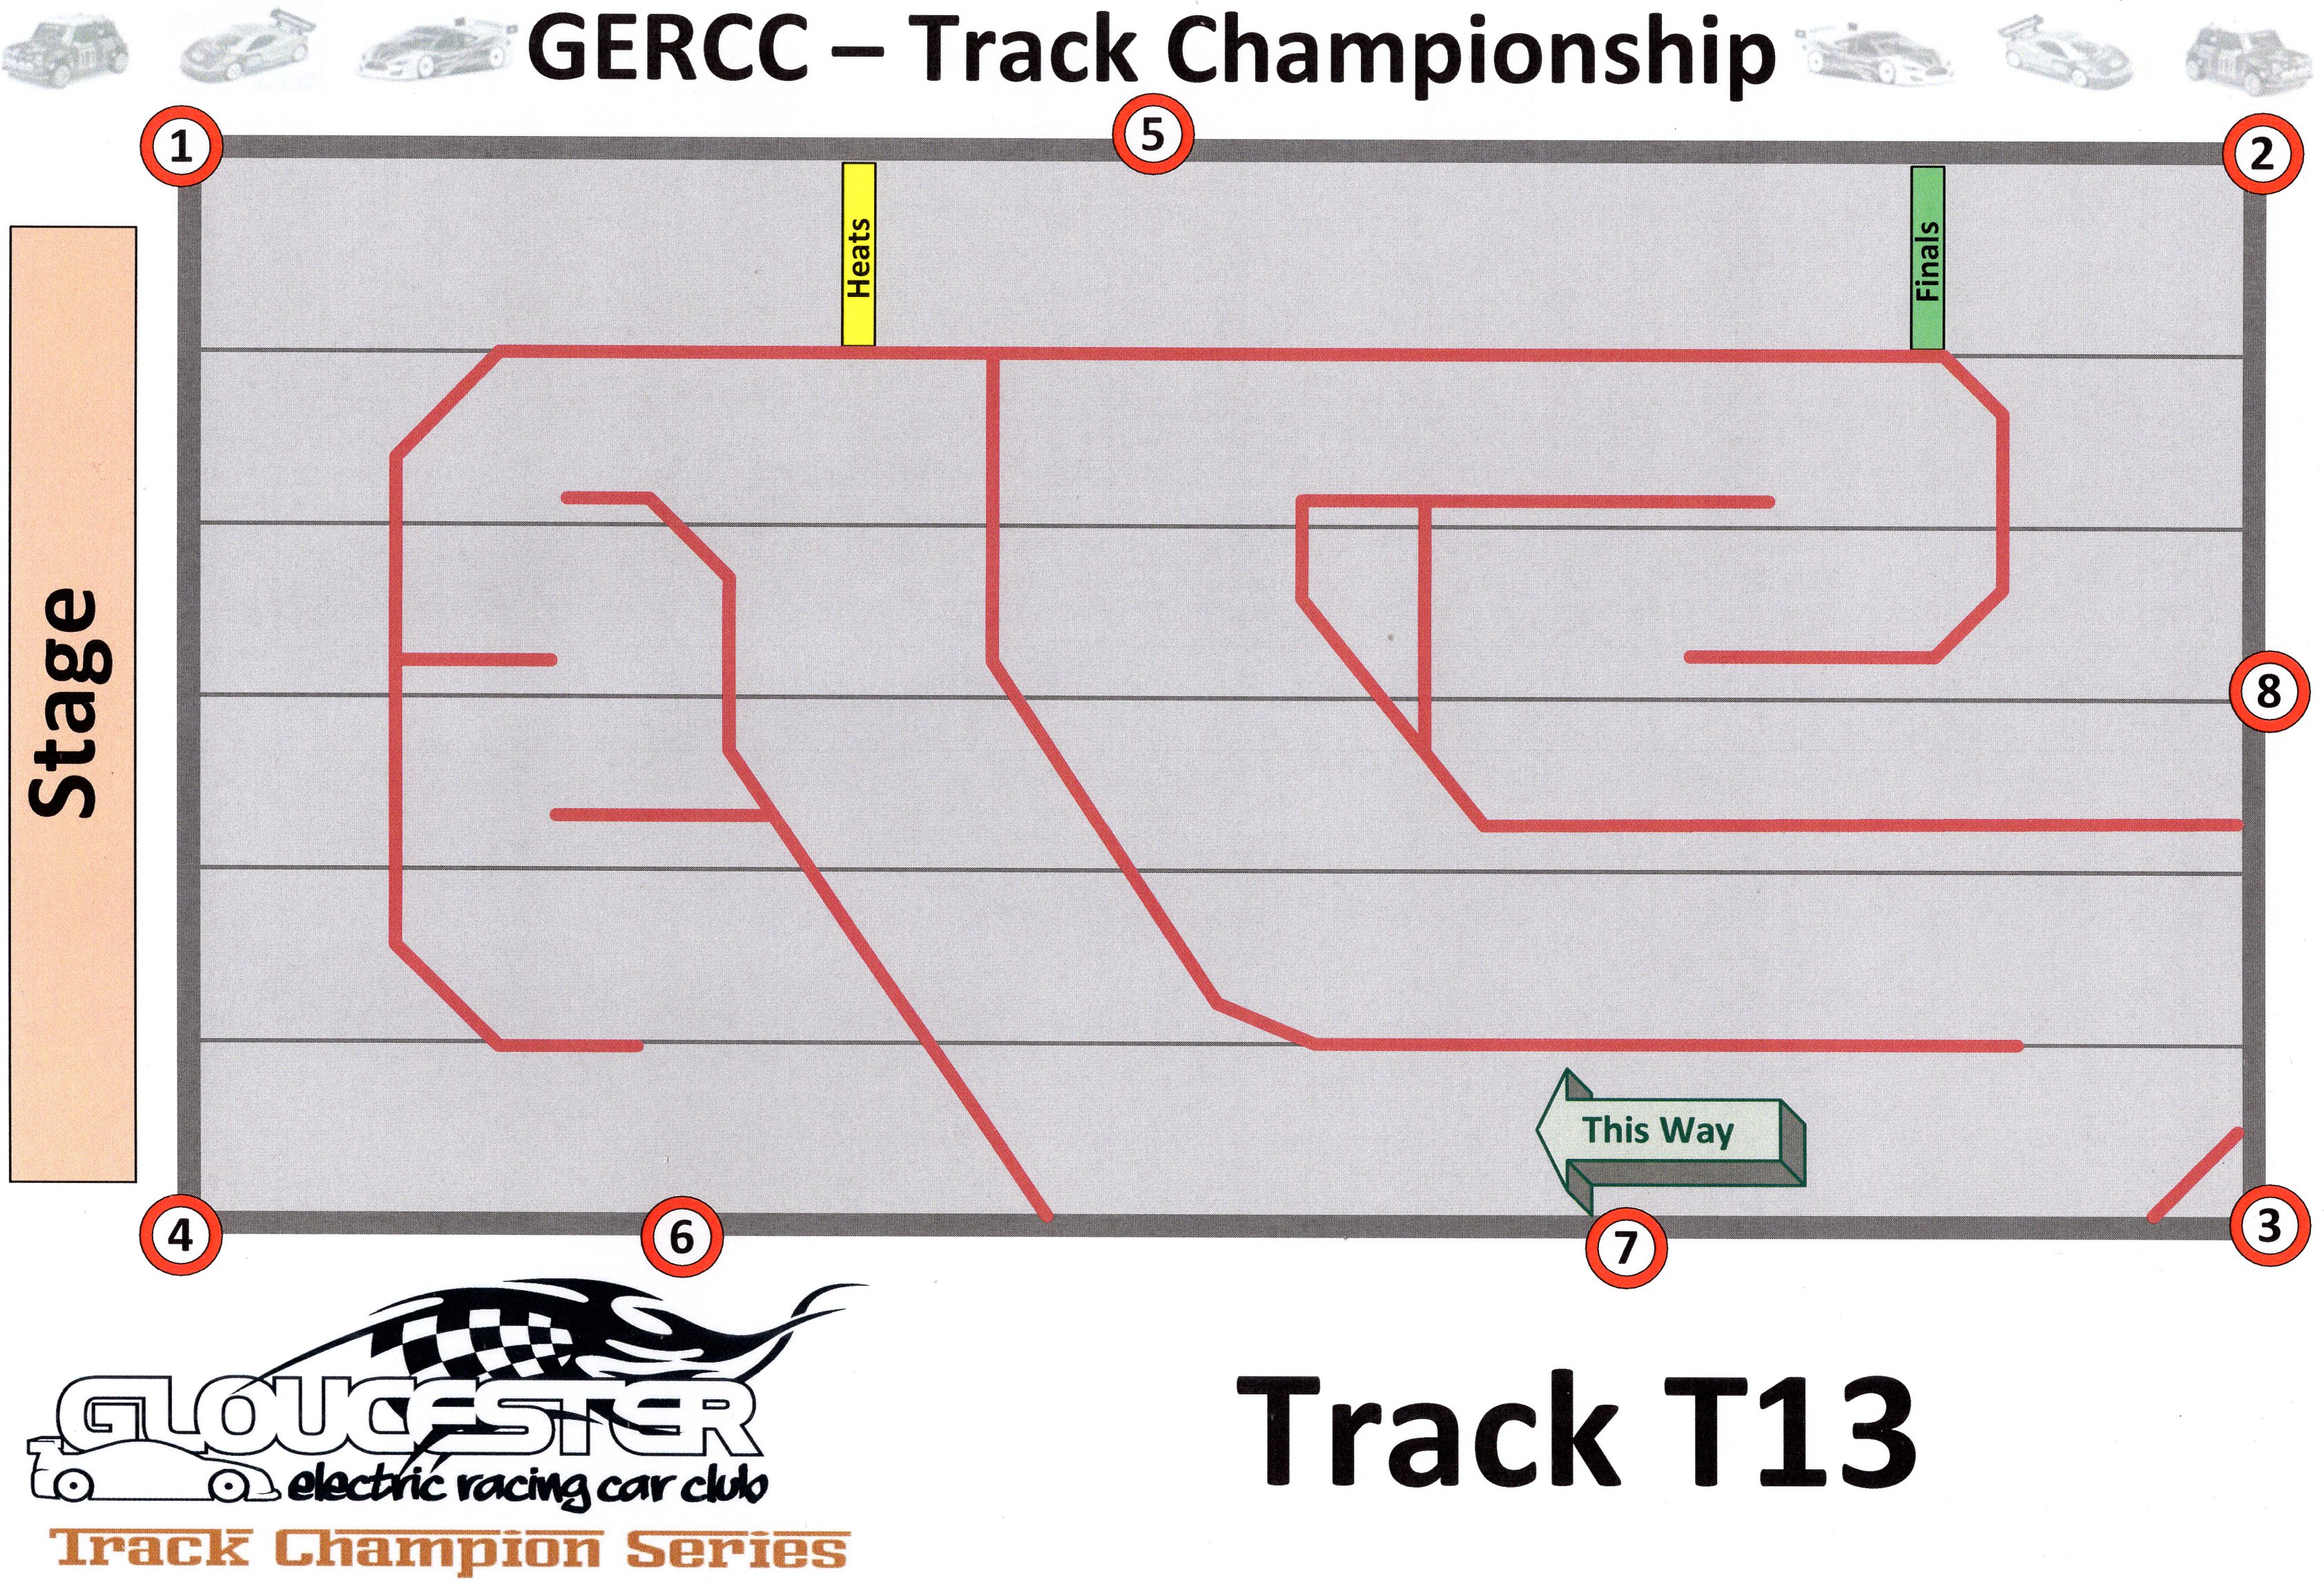 GERCC TCS Track 13